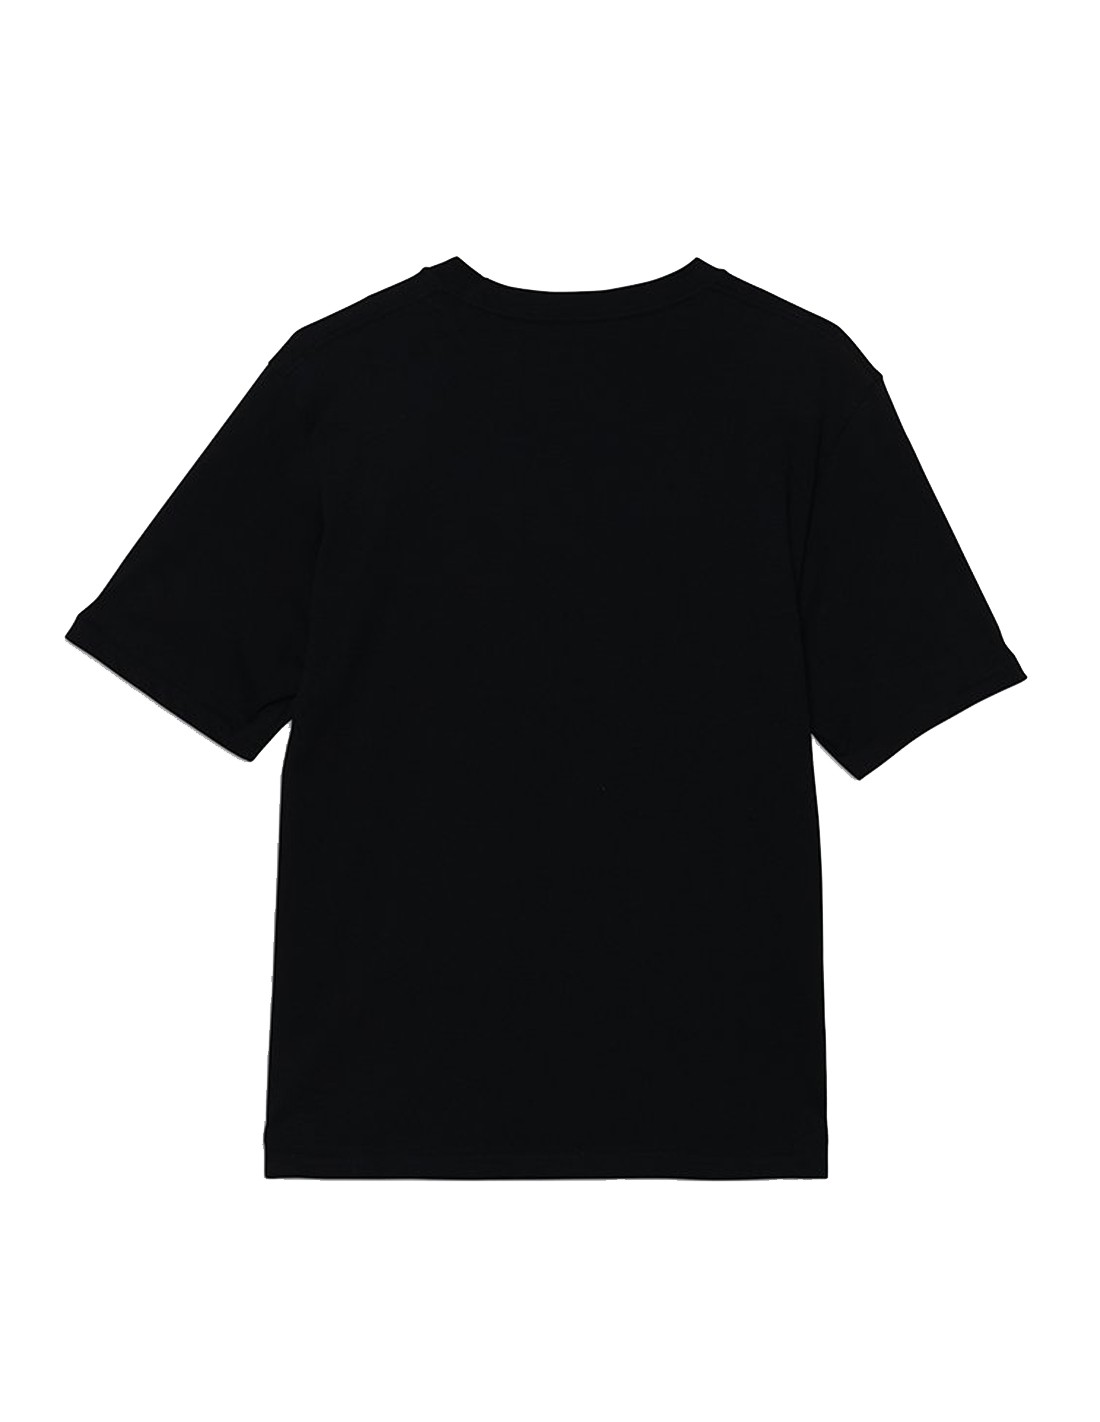 OTW - Black VANS T-shirt - Boys